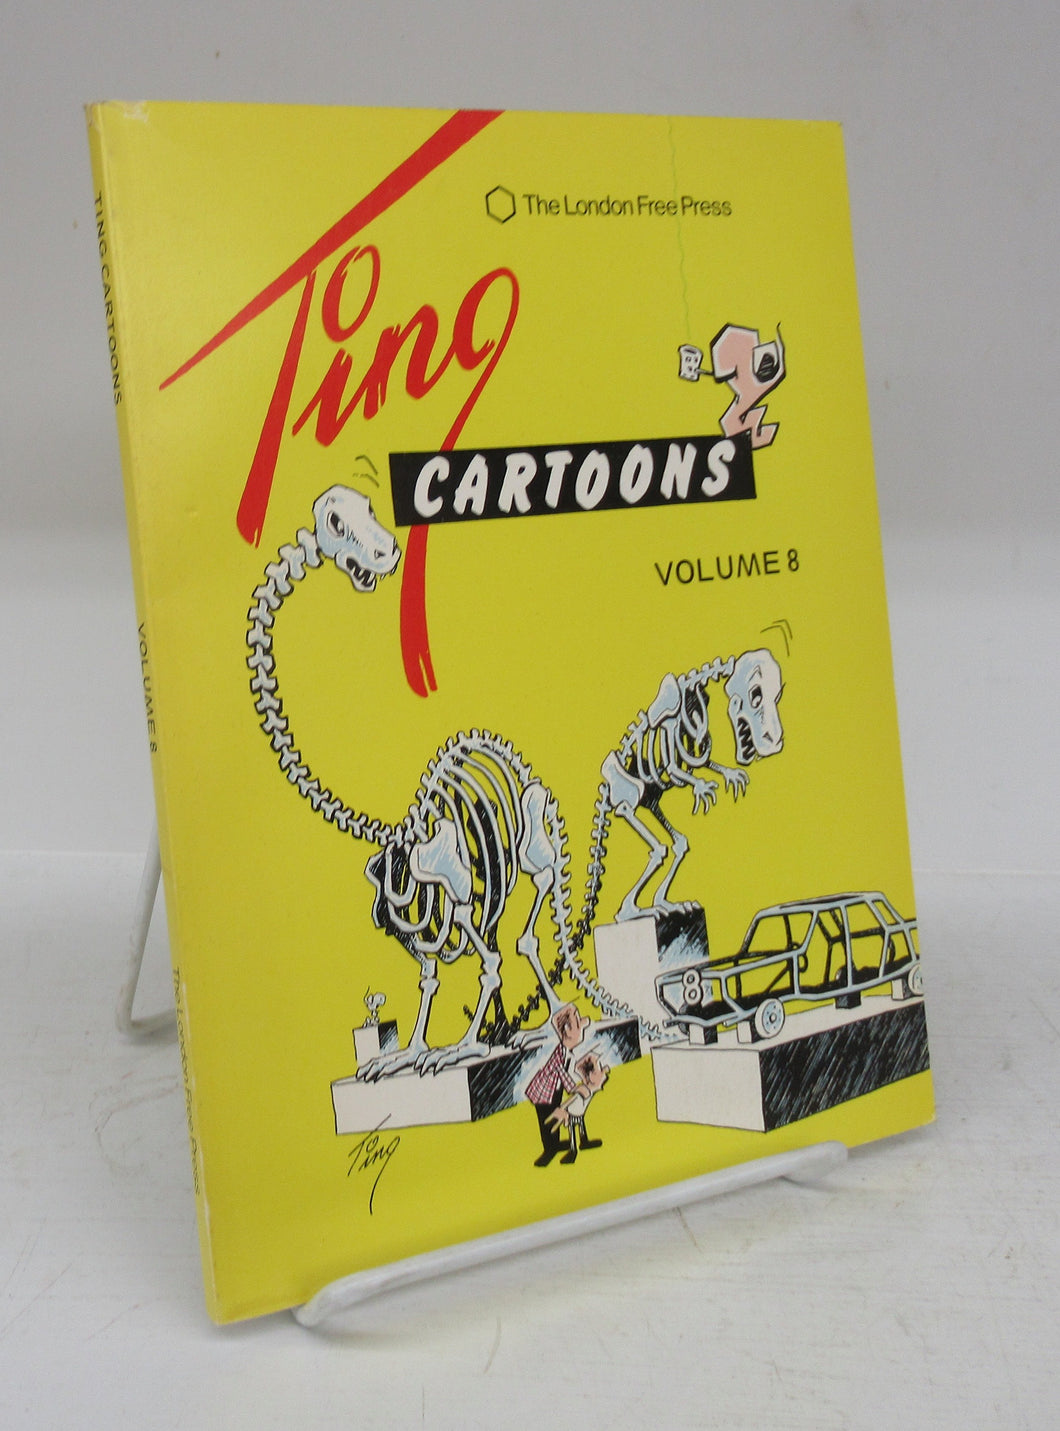 Ting Cartoons Volume 8